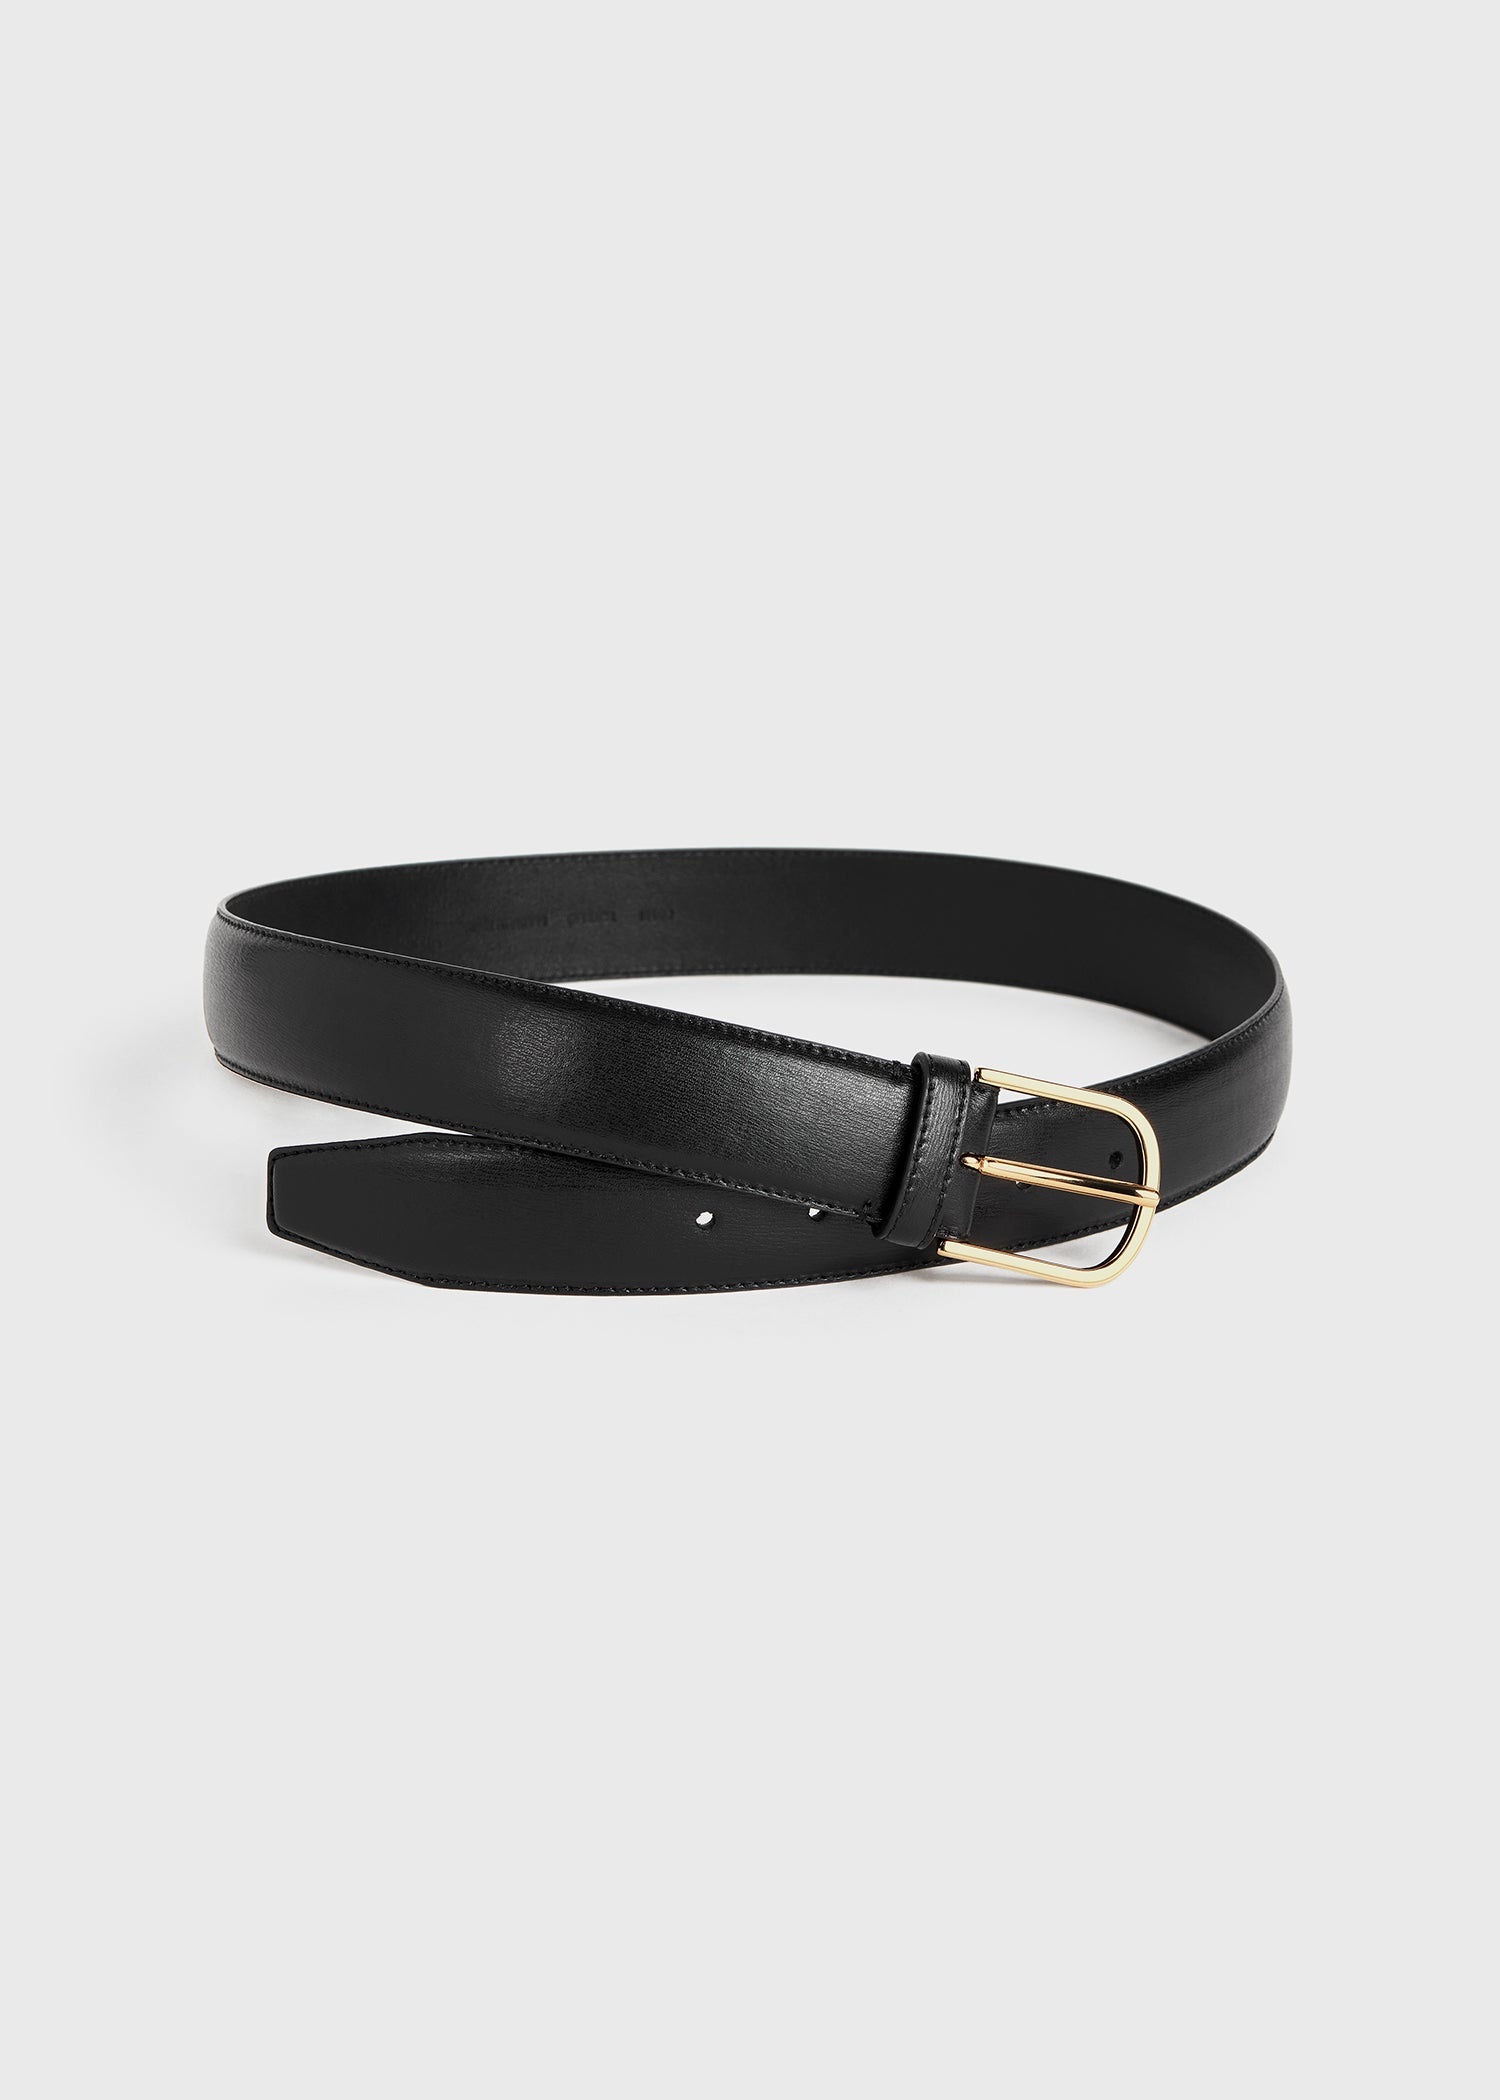 Wide trouser belt black - 4